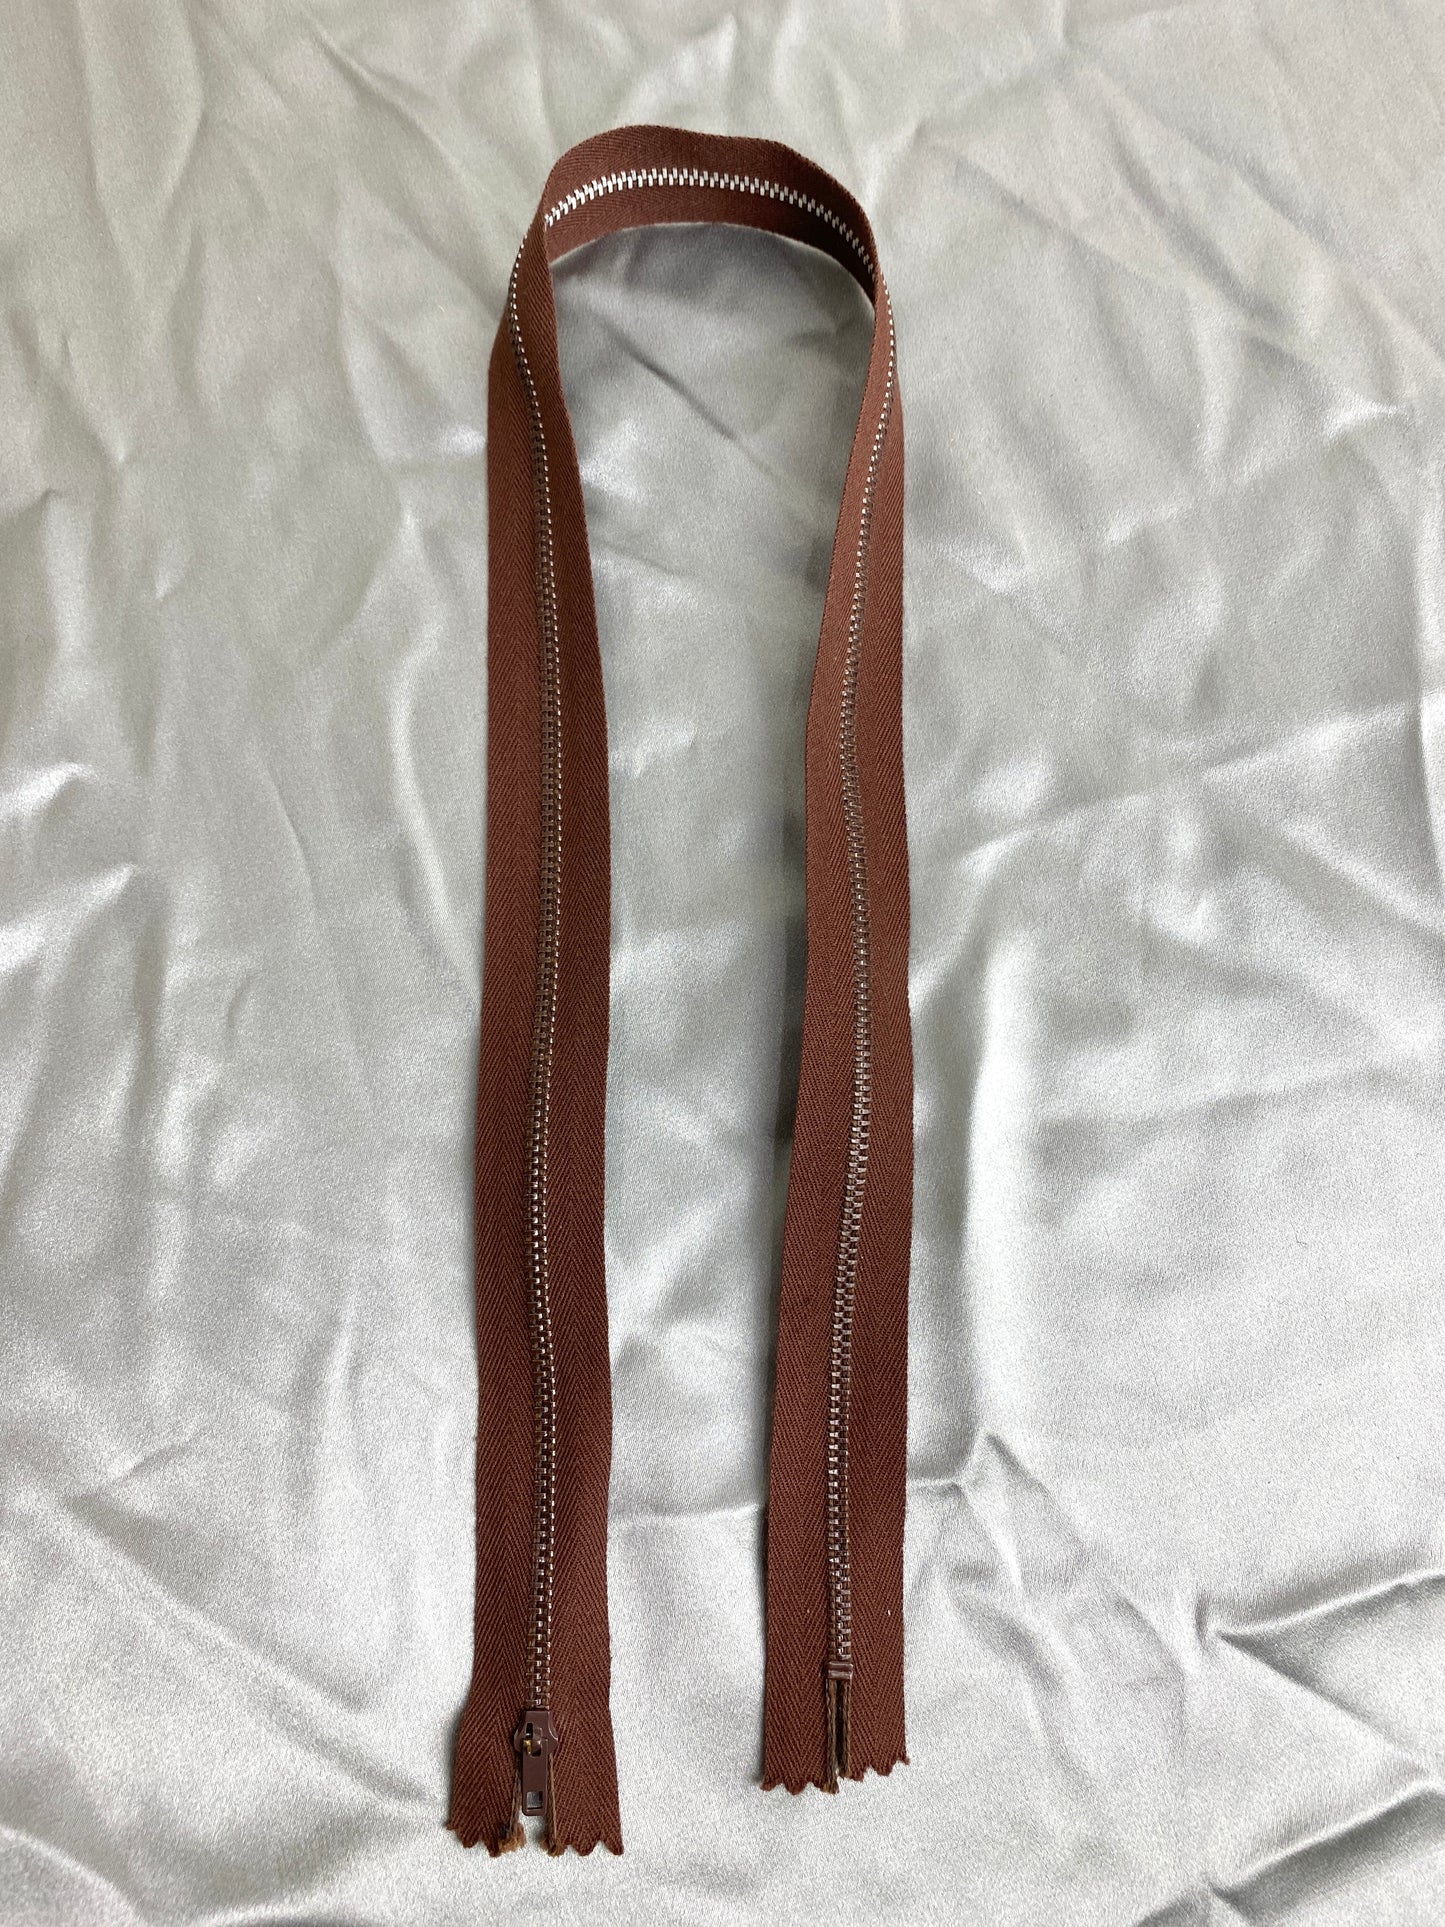 A single dark brown vintage metal zipper. Ian Drummond Vintage. 